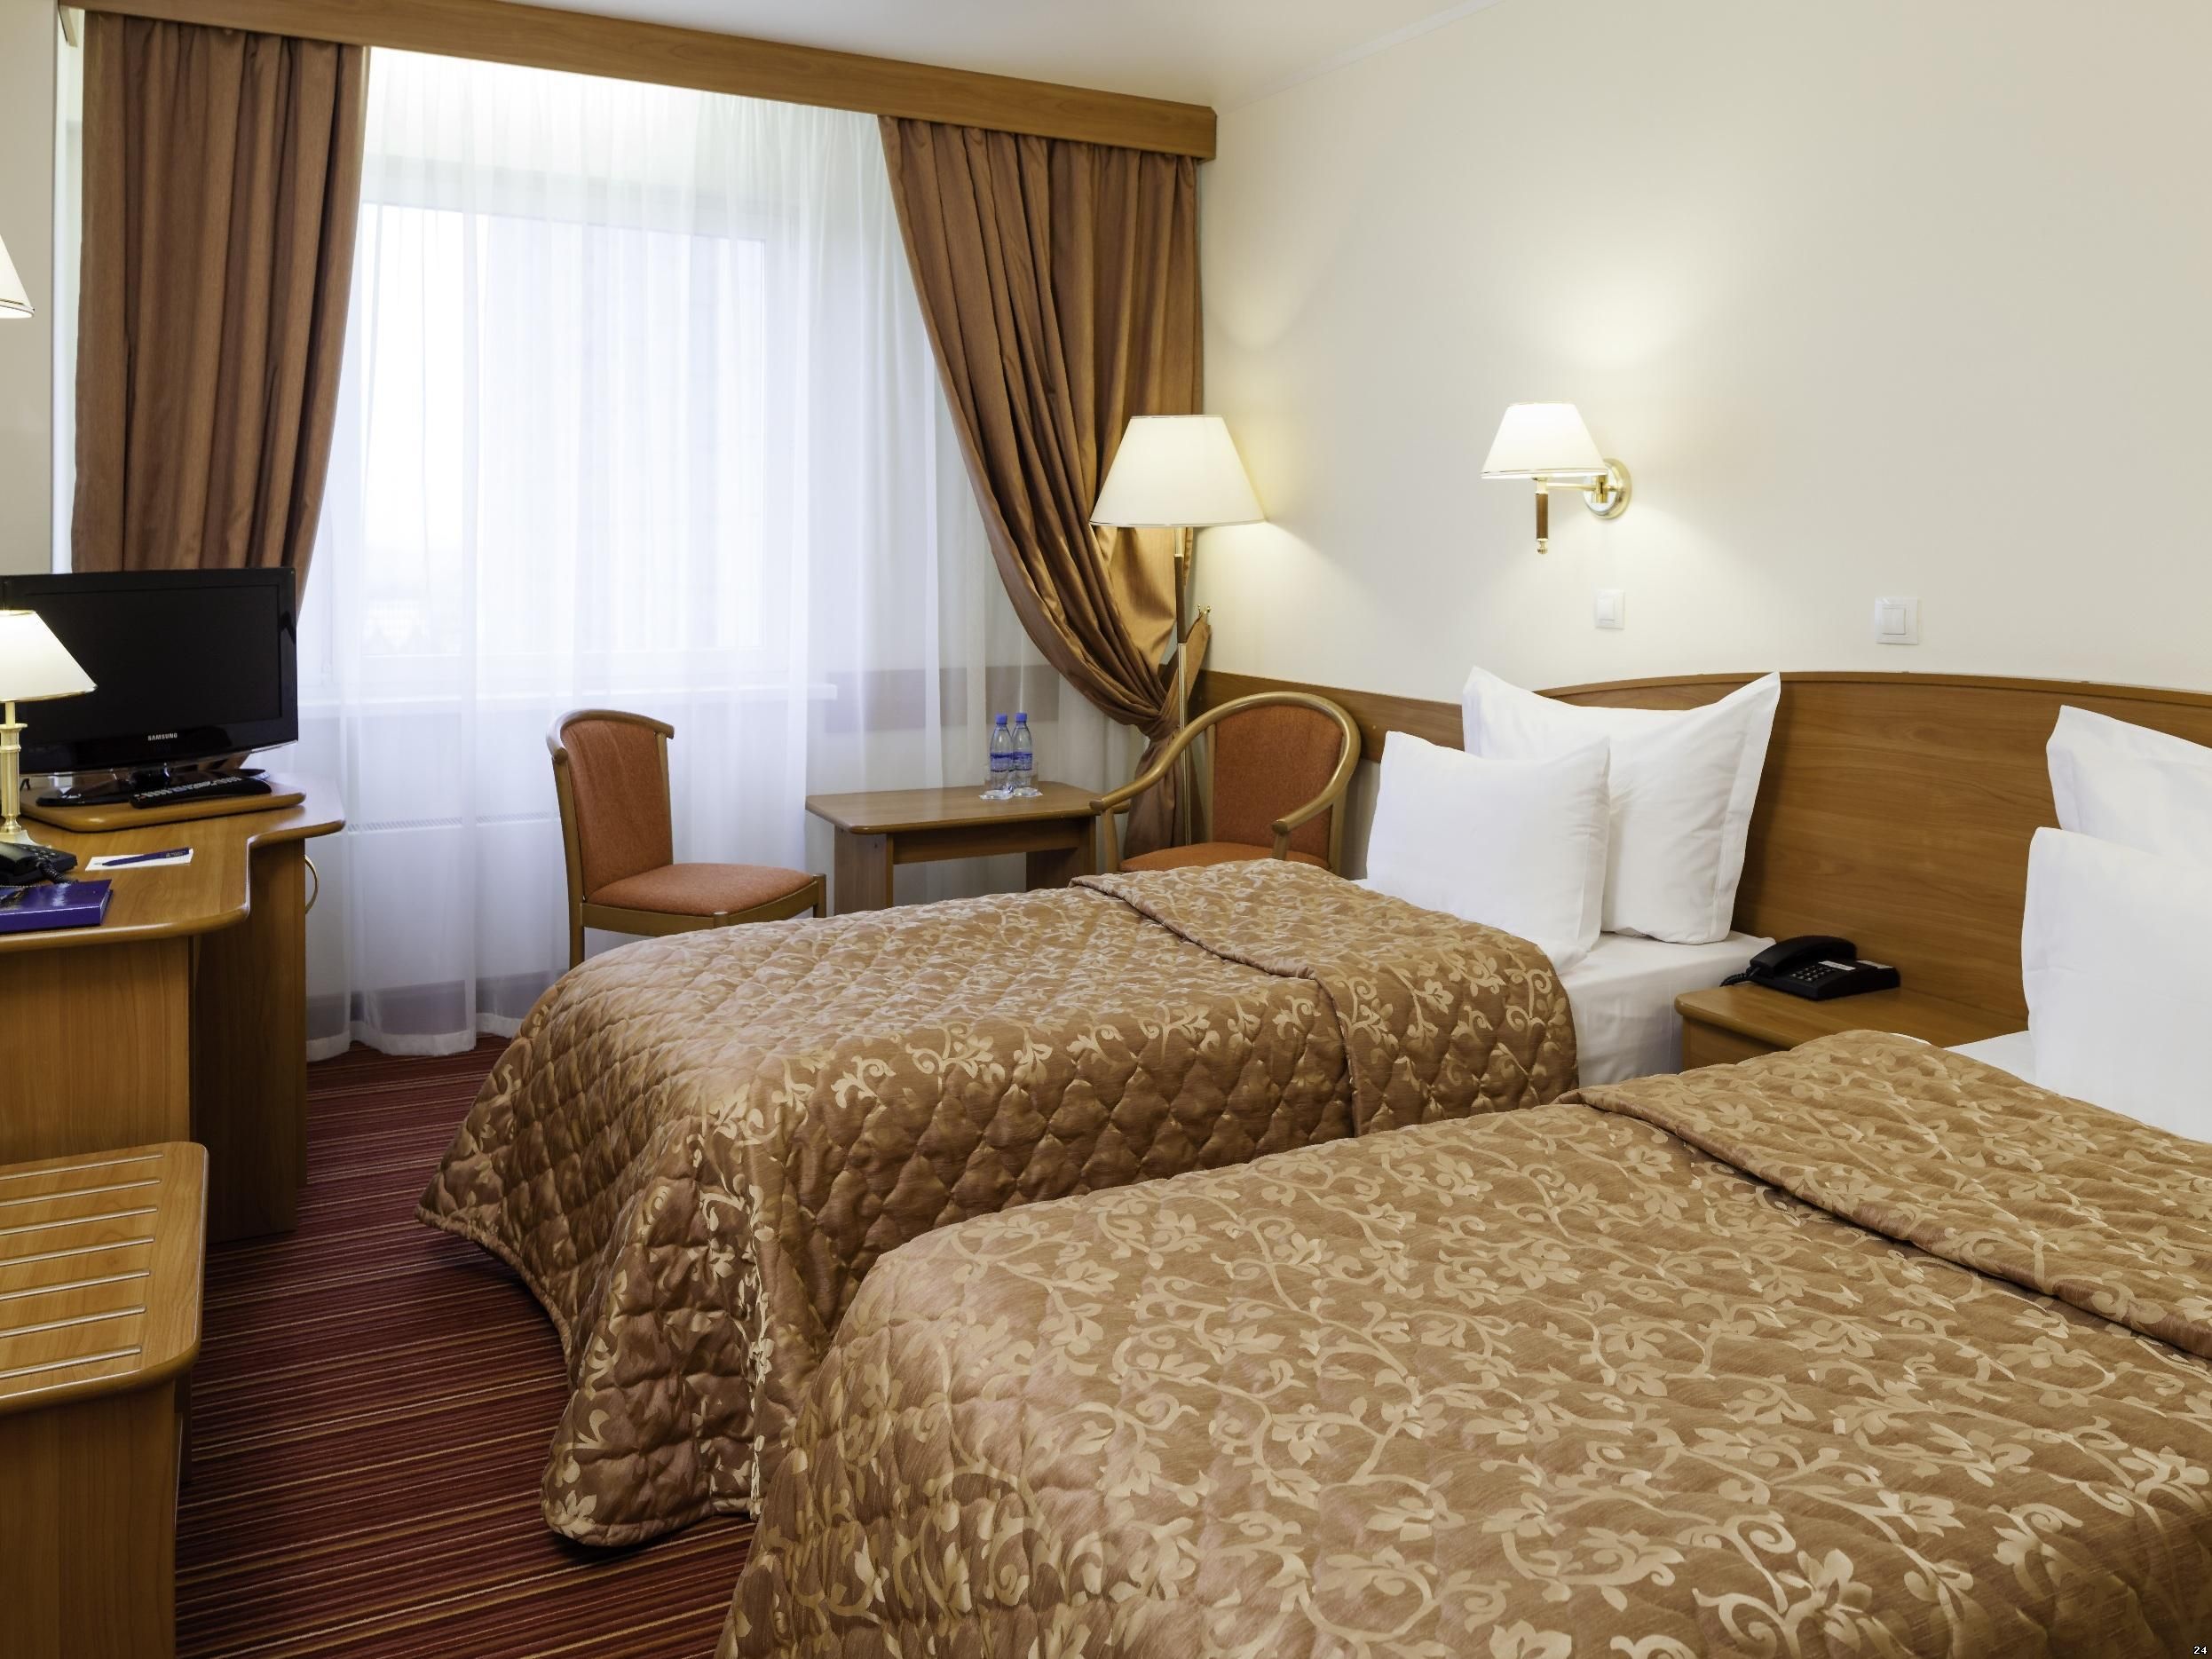 Номер в гостинице Барнаула: выбрать одну или две кровати?